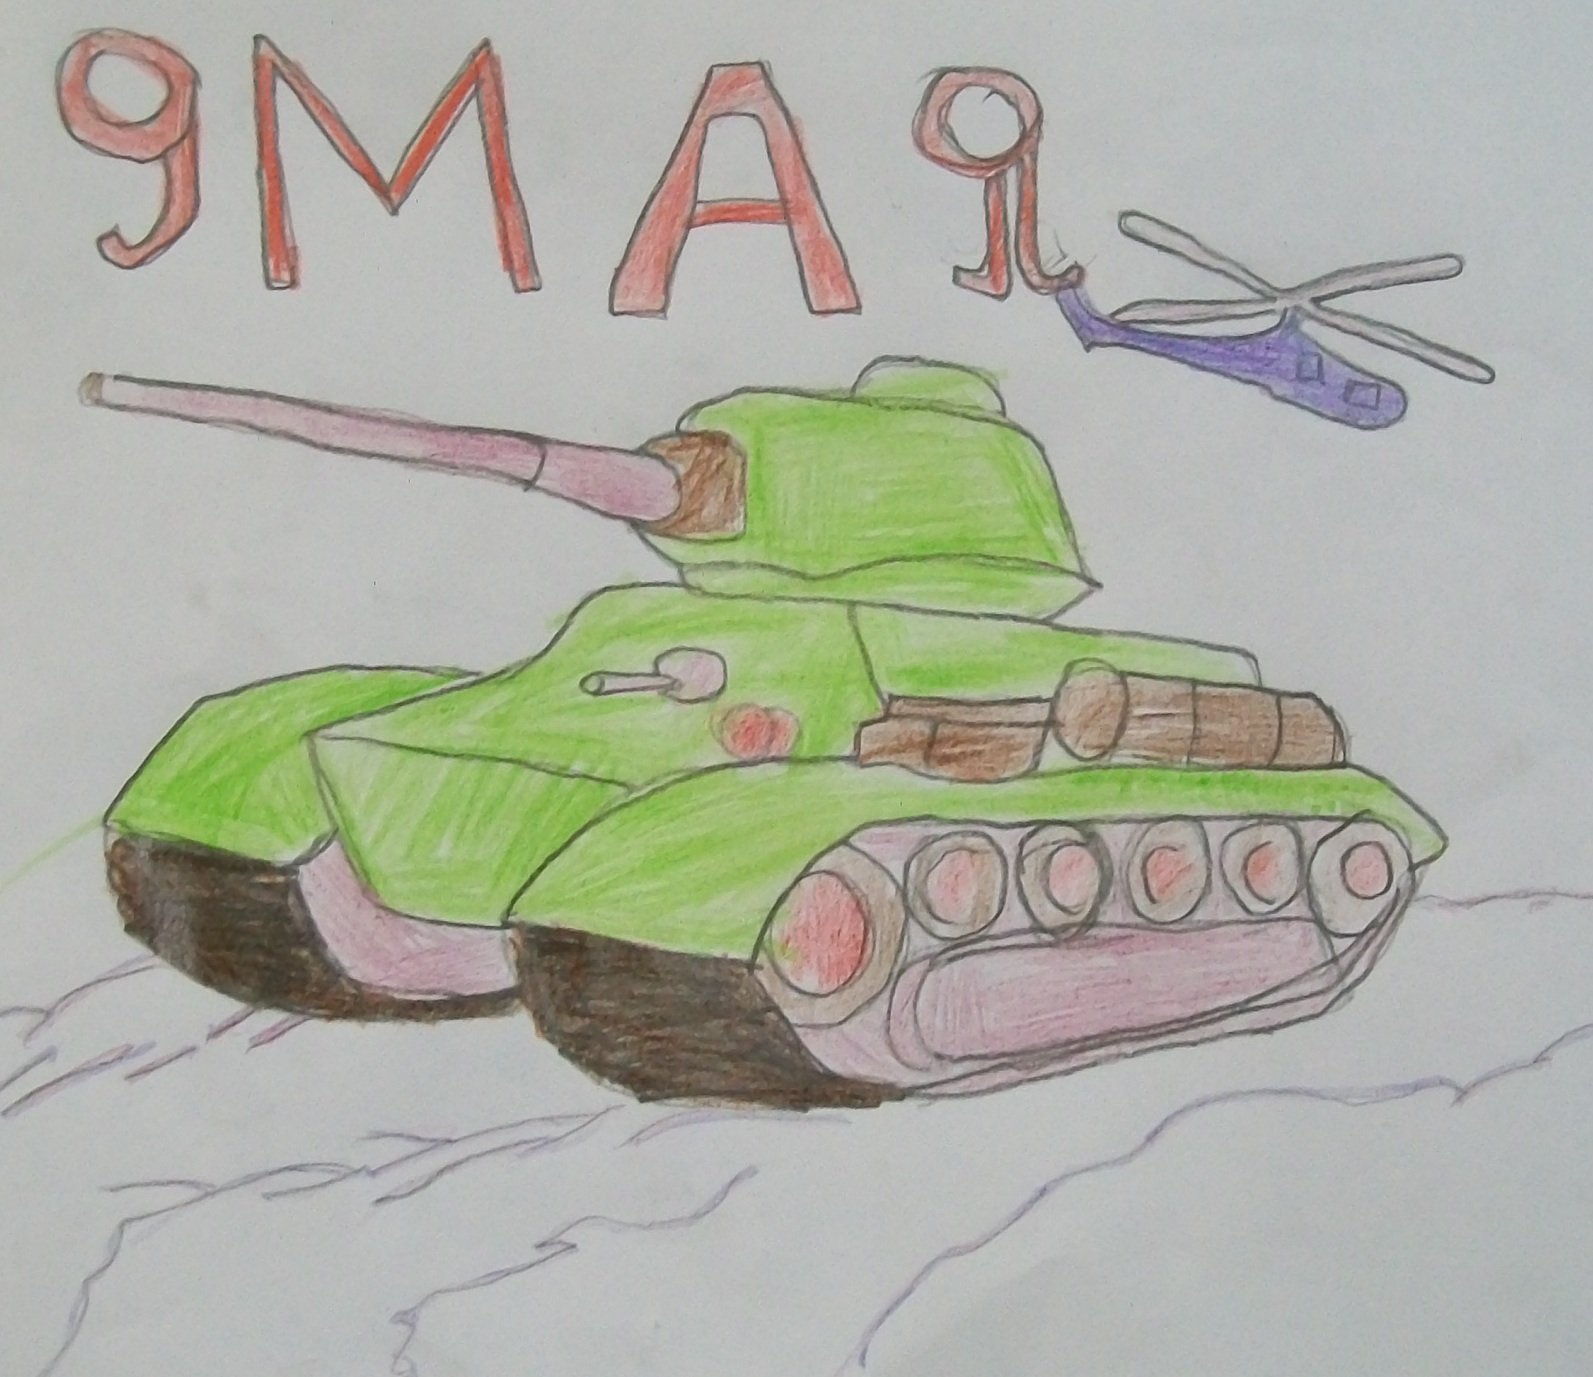 Рисунок на тему танки